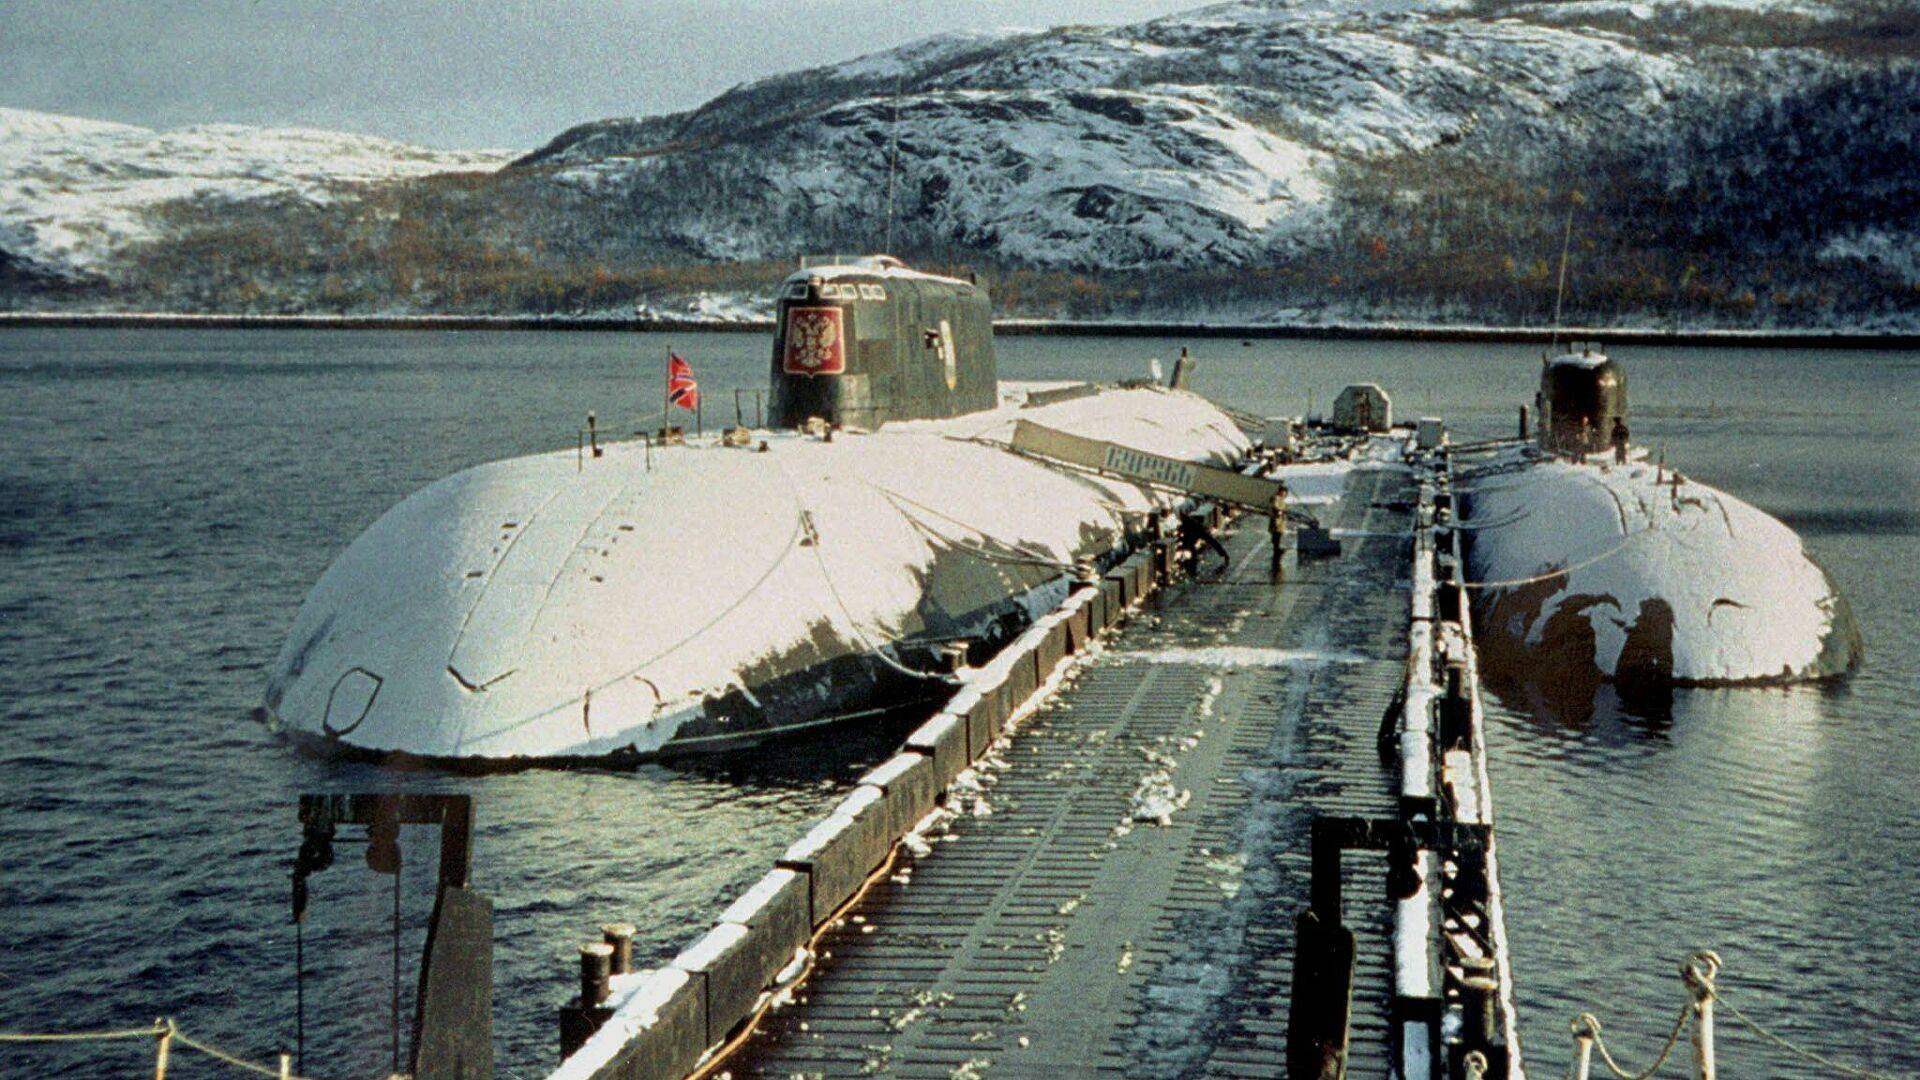 К-141 «курск» - история создания и гибели атомной подводной лодки курск к-141 «курск» - история создания и гибели атомной подводной лодки курск